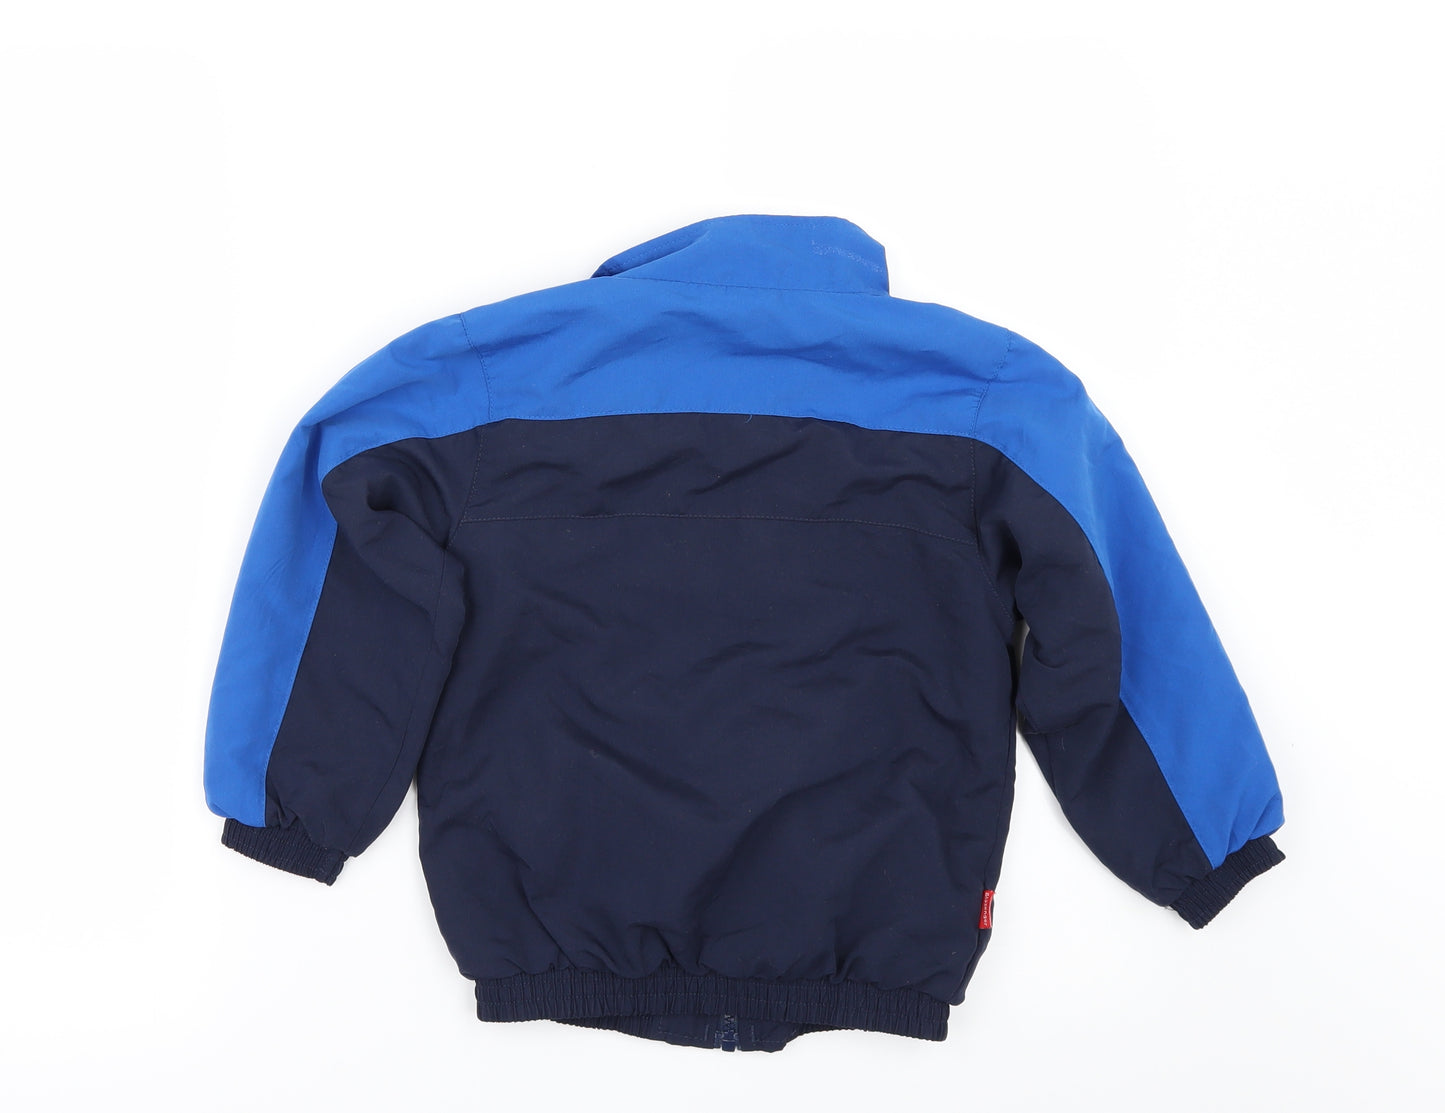 Slazenger Boys Blue   Jacket  Size 3-4 Years